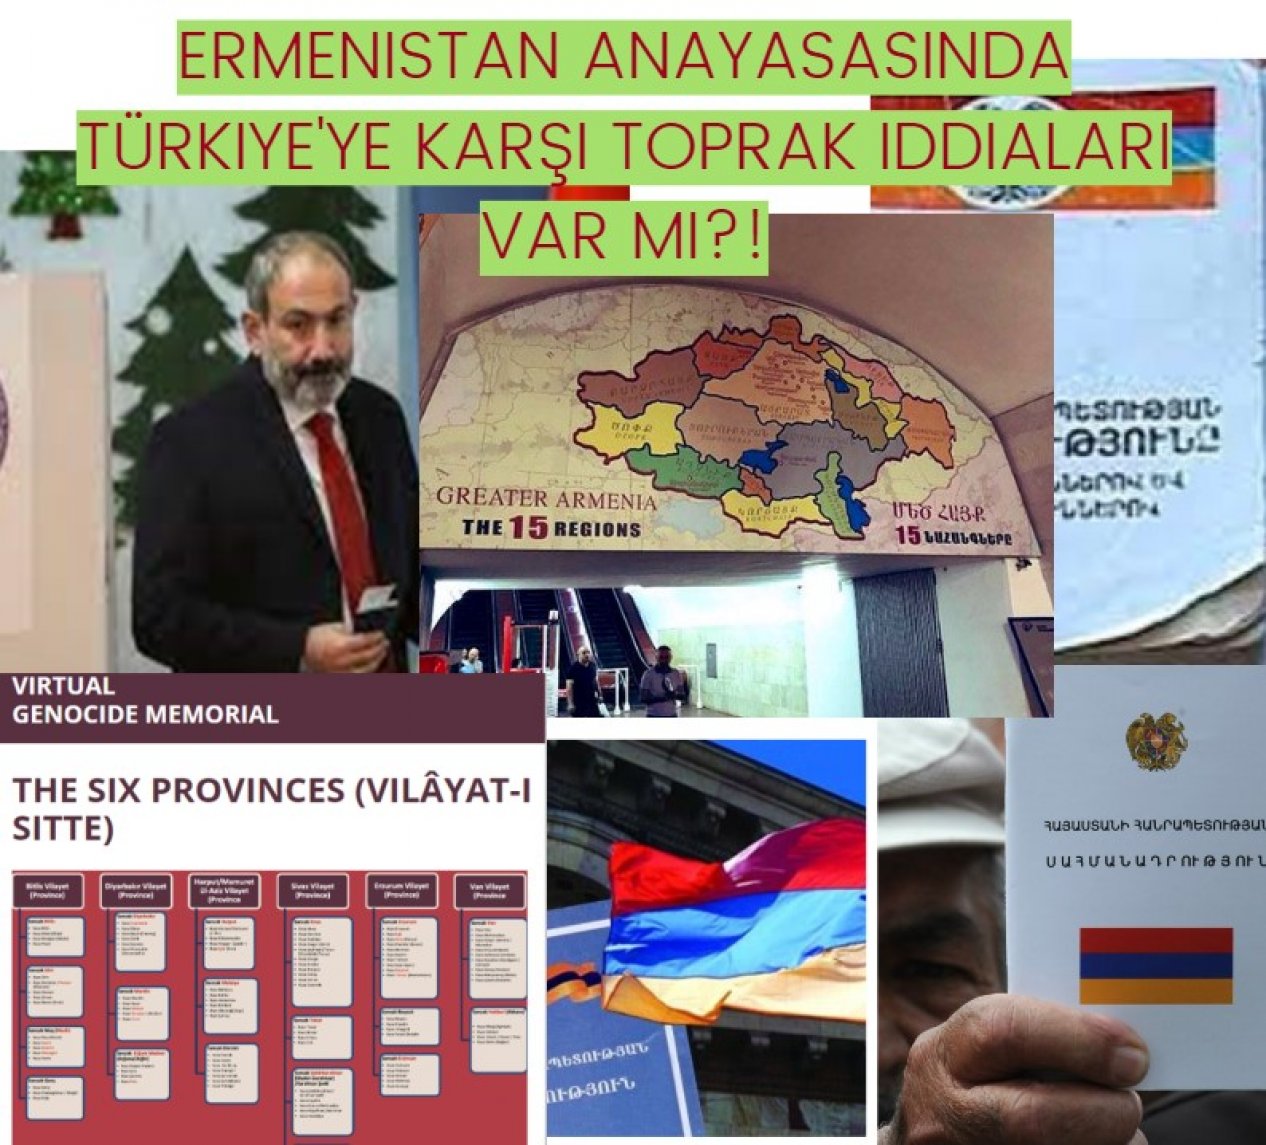 Ermenistan Anayasasında Türkiye'ye karşı toprak iddiaları var mı?!